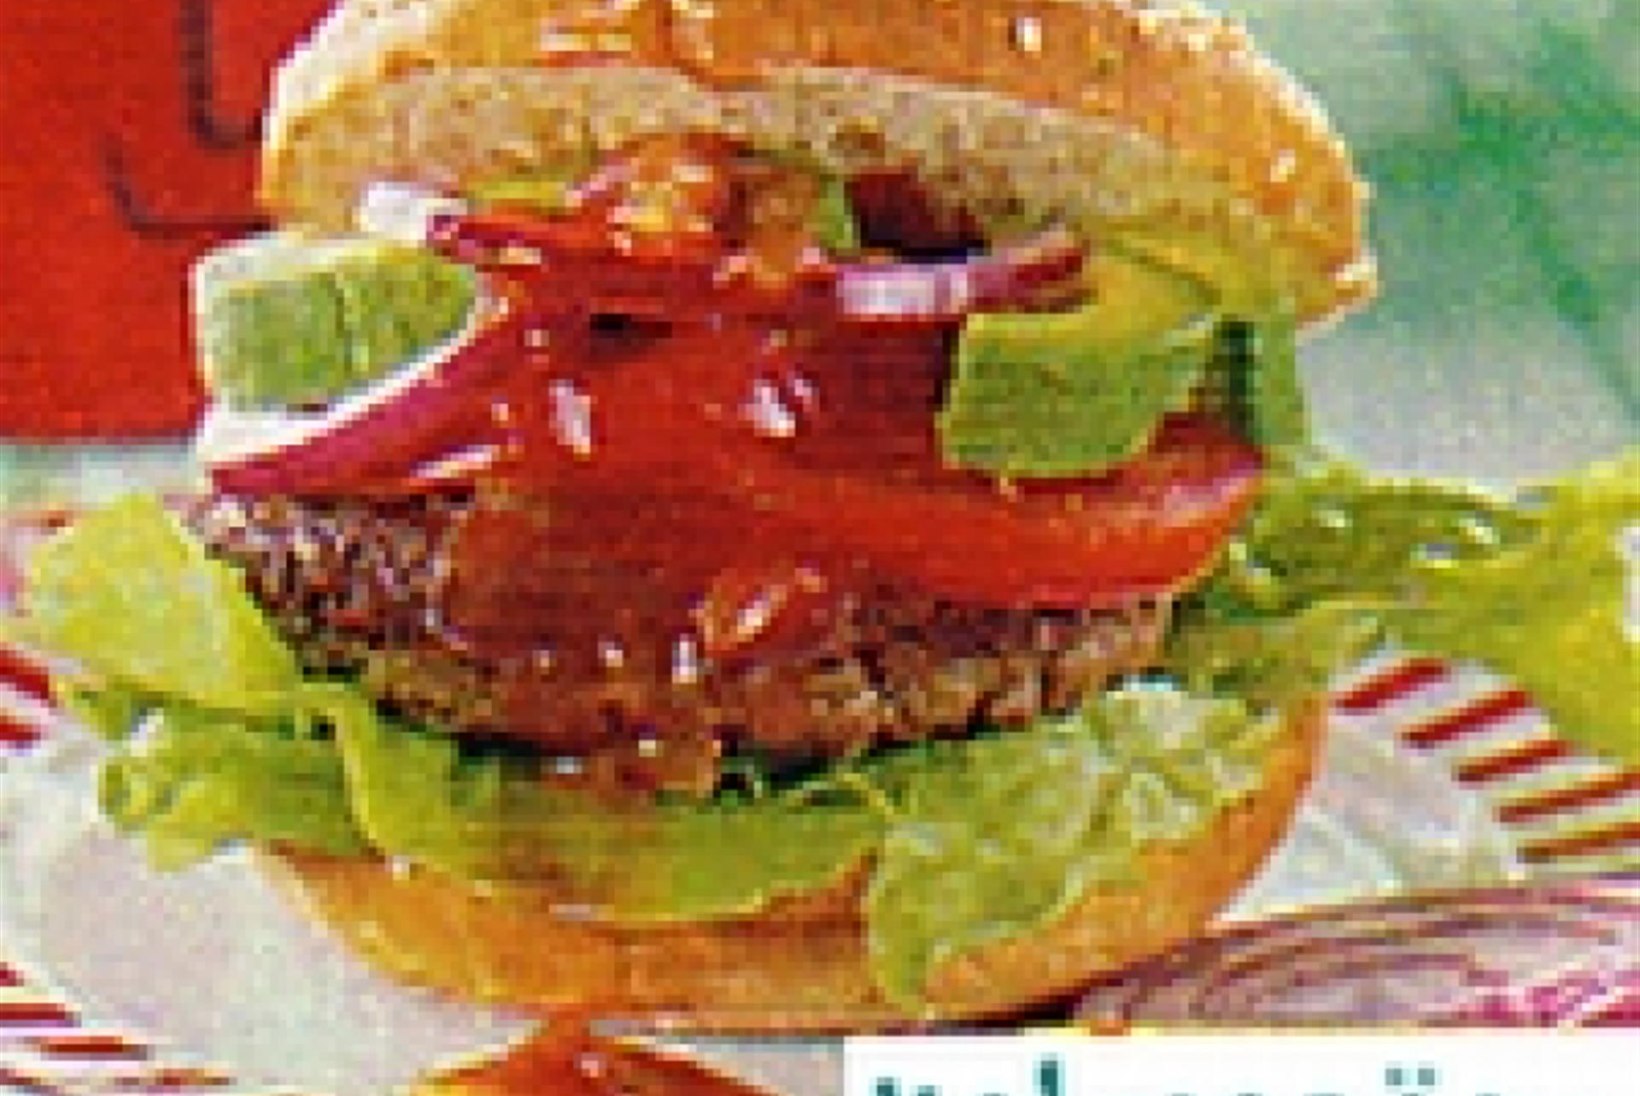 Tex-mex burger